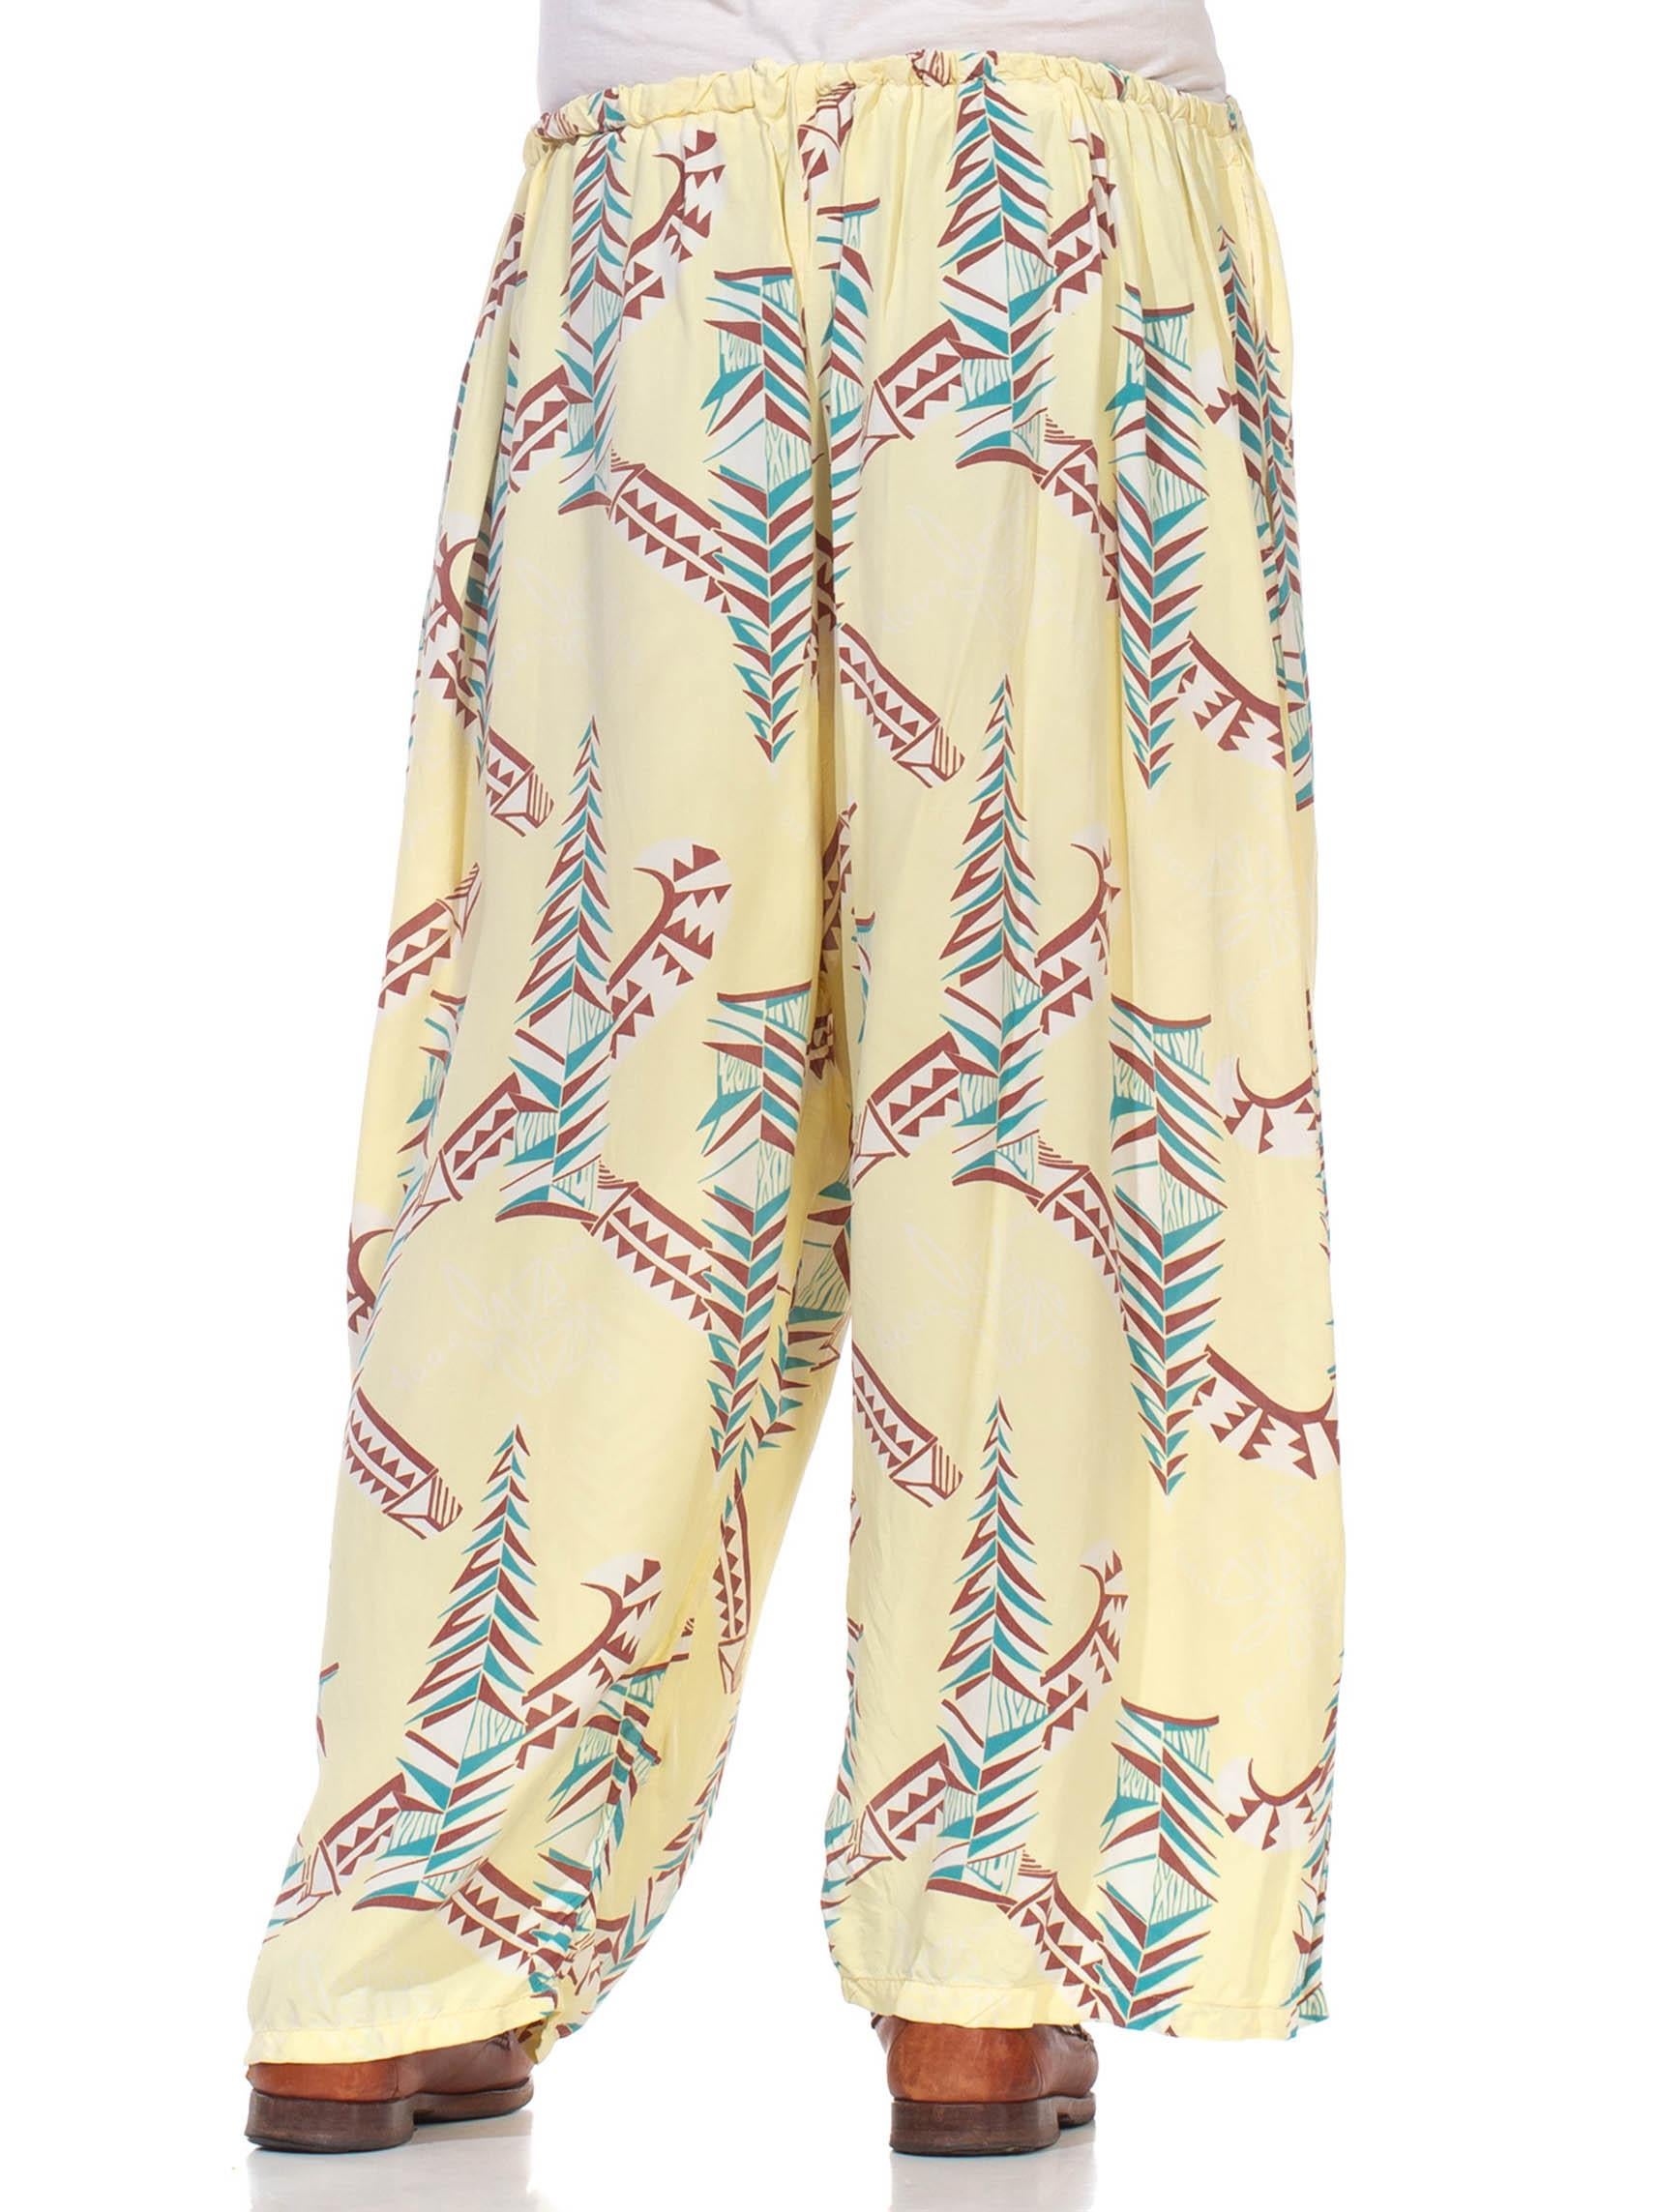 Pajama-Lounge-Hose aus Viskose in Buttergelb, Braun & Blau, 1940er Jahre für Damen oder Herren im Angebot